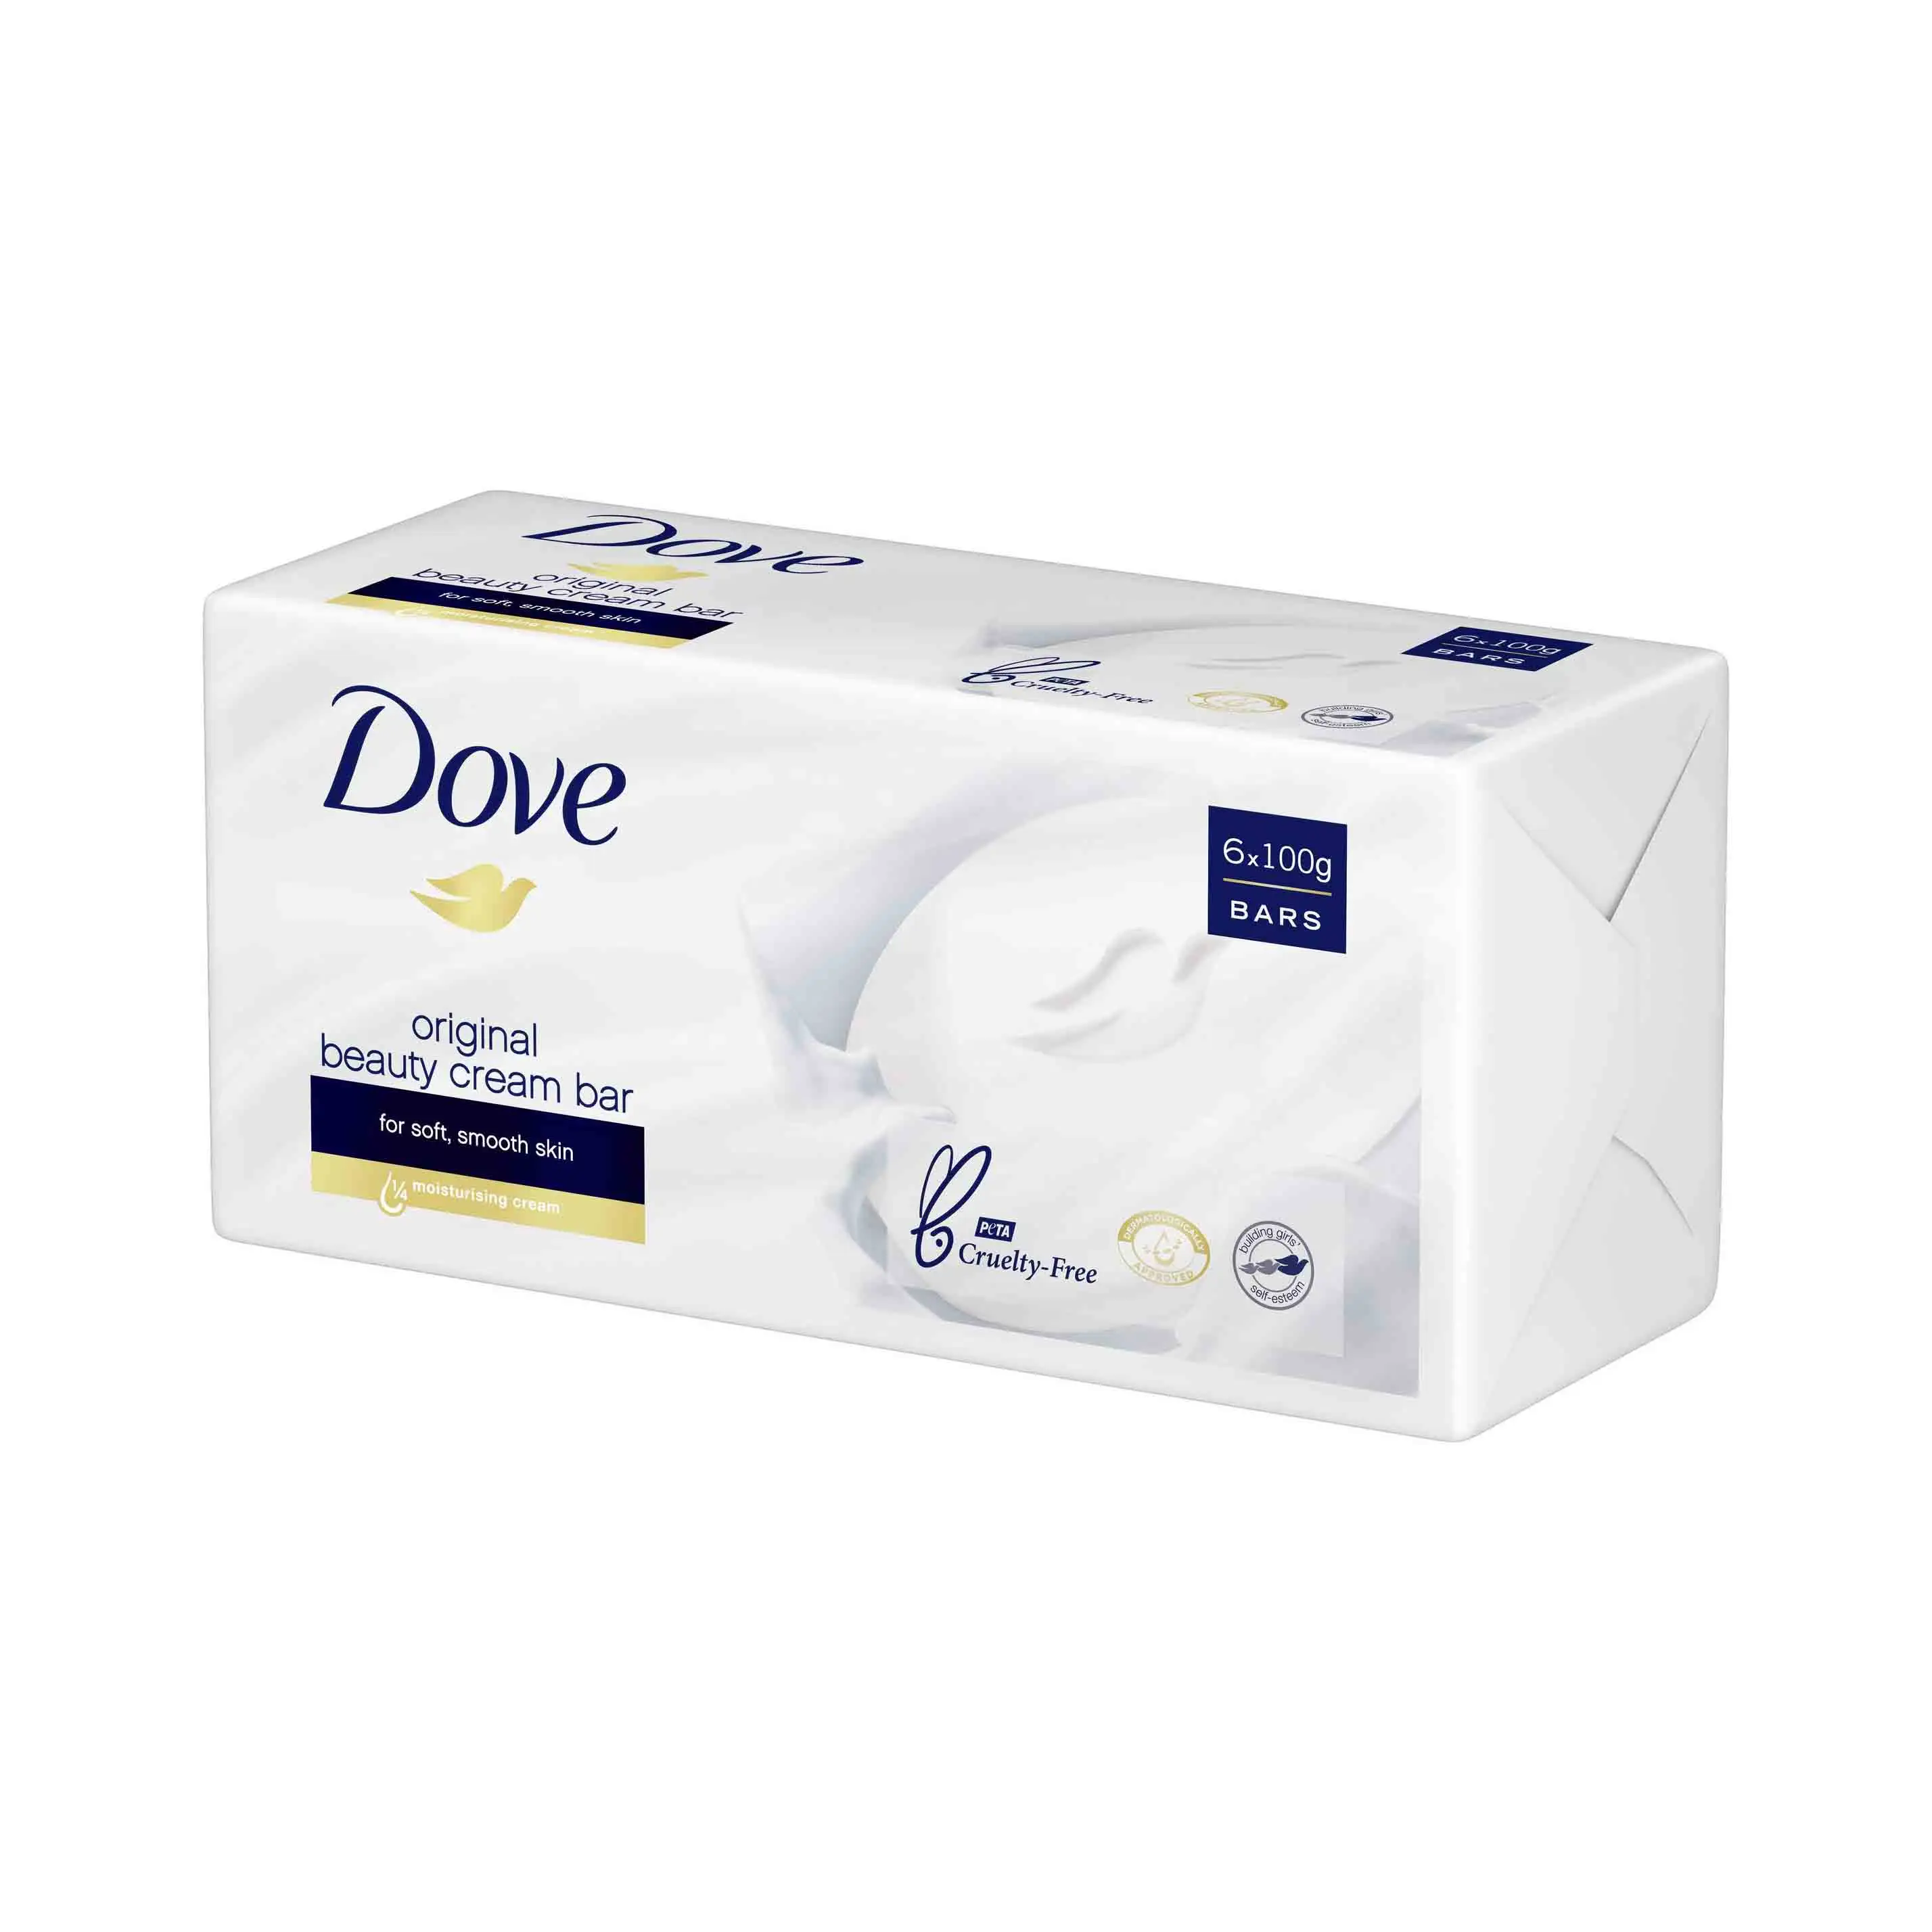 Dove-Barre de crème de beauté rose-Savon crémeux-100g